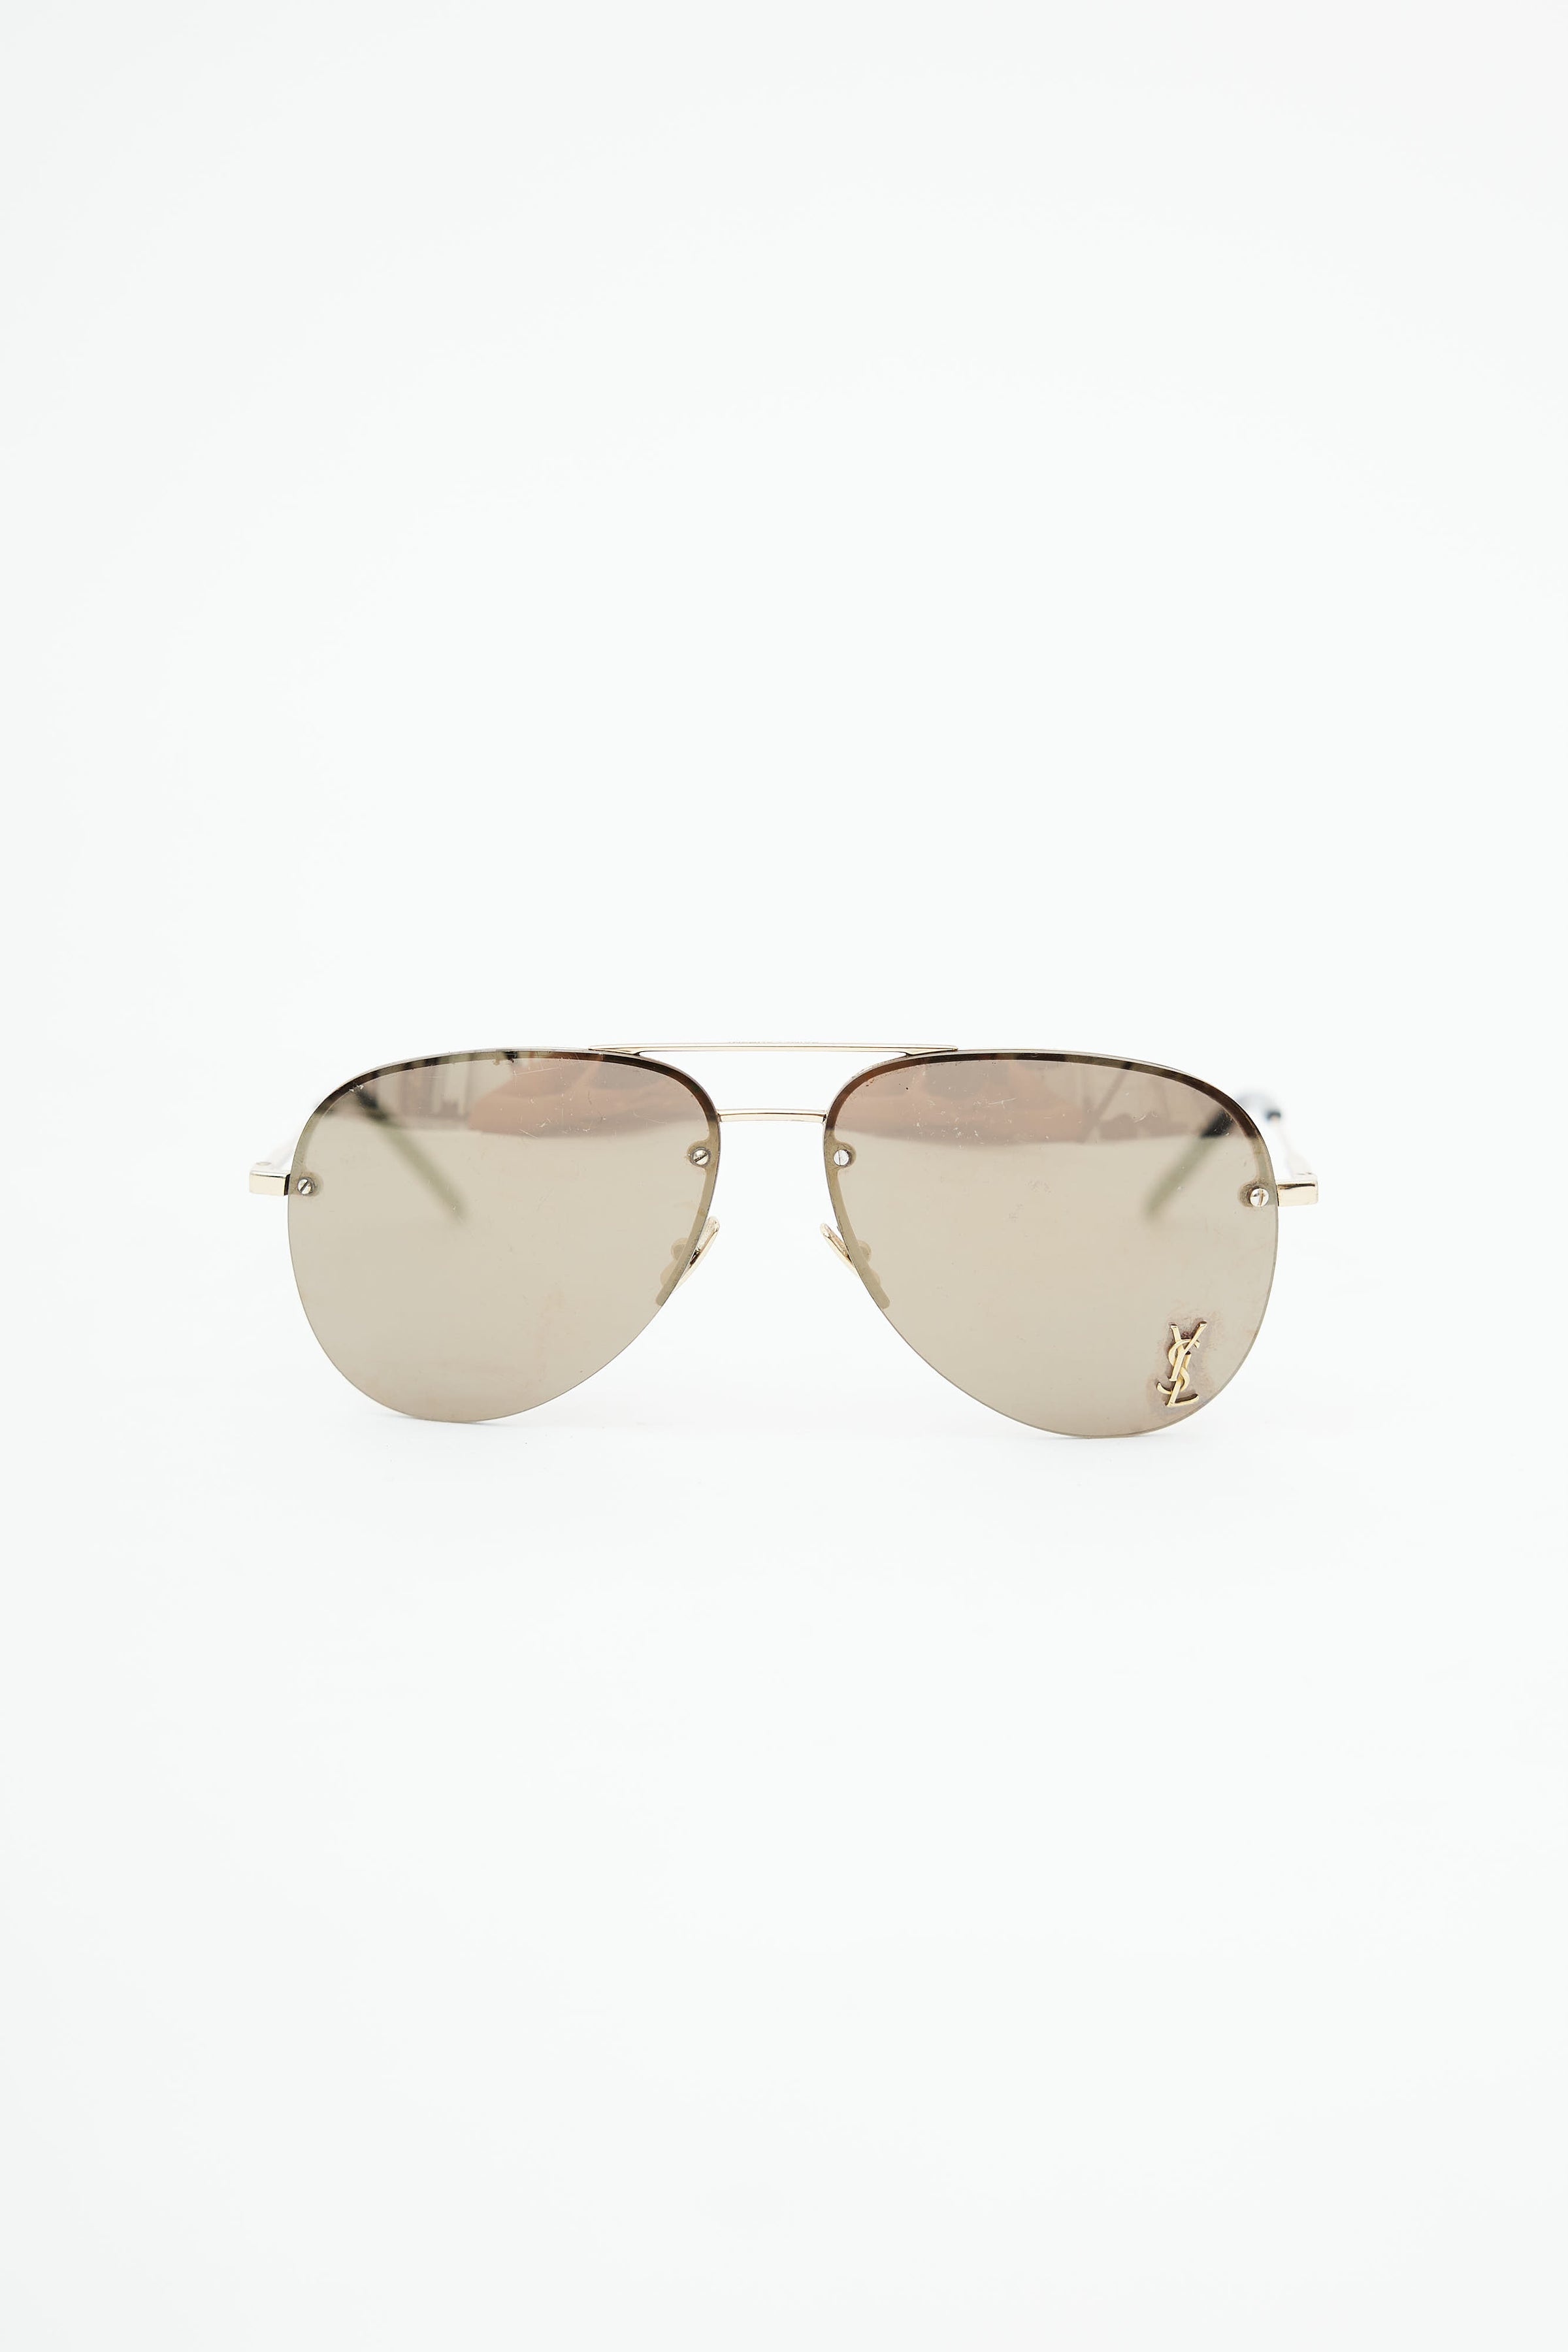 Saint Laurent CLASSIC 11 M 003 Sunglasses Gold | SmartBuyGlasses India